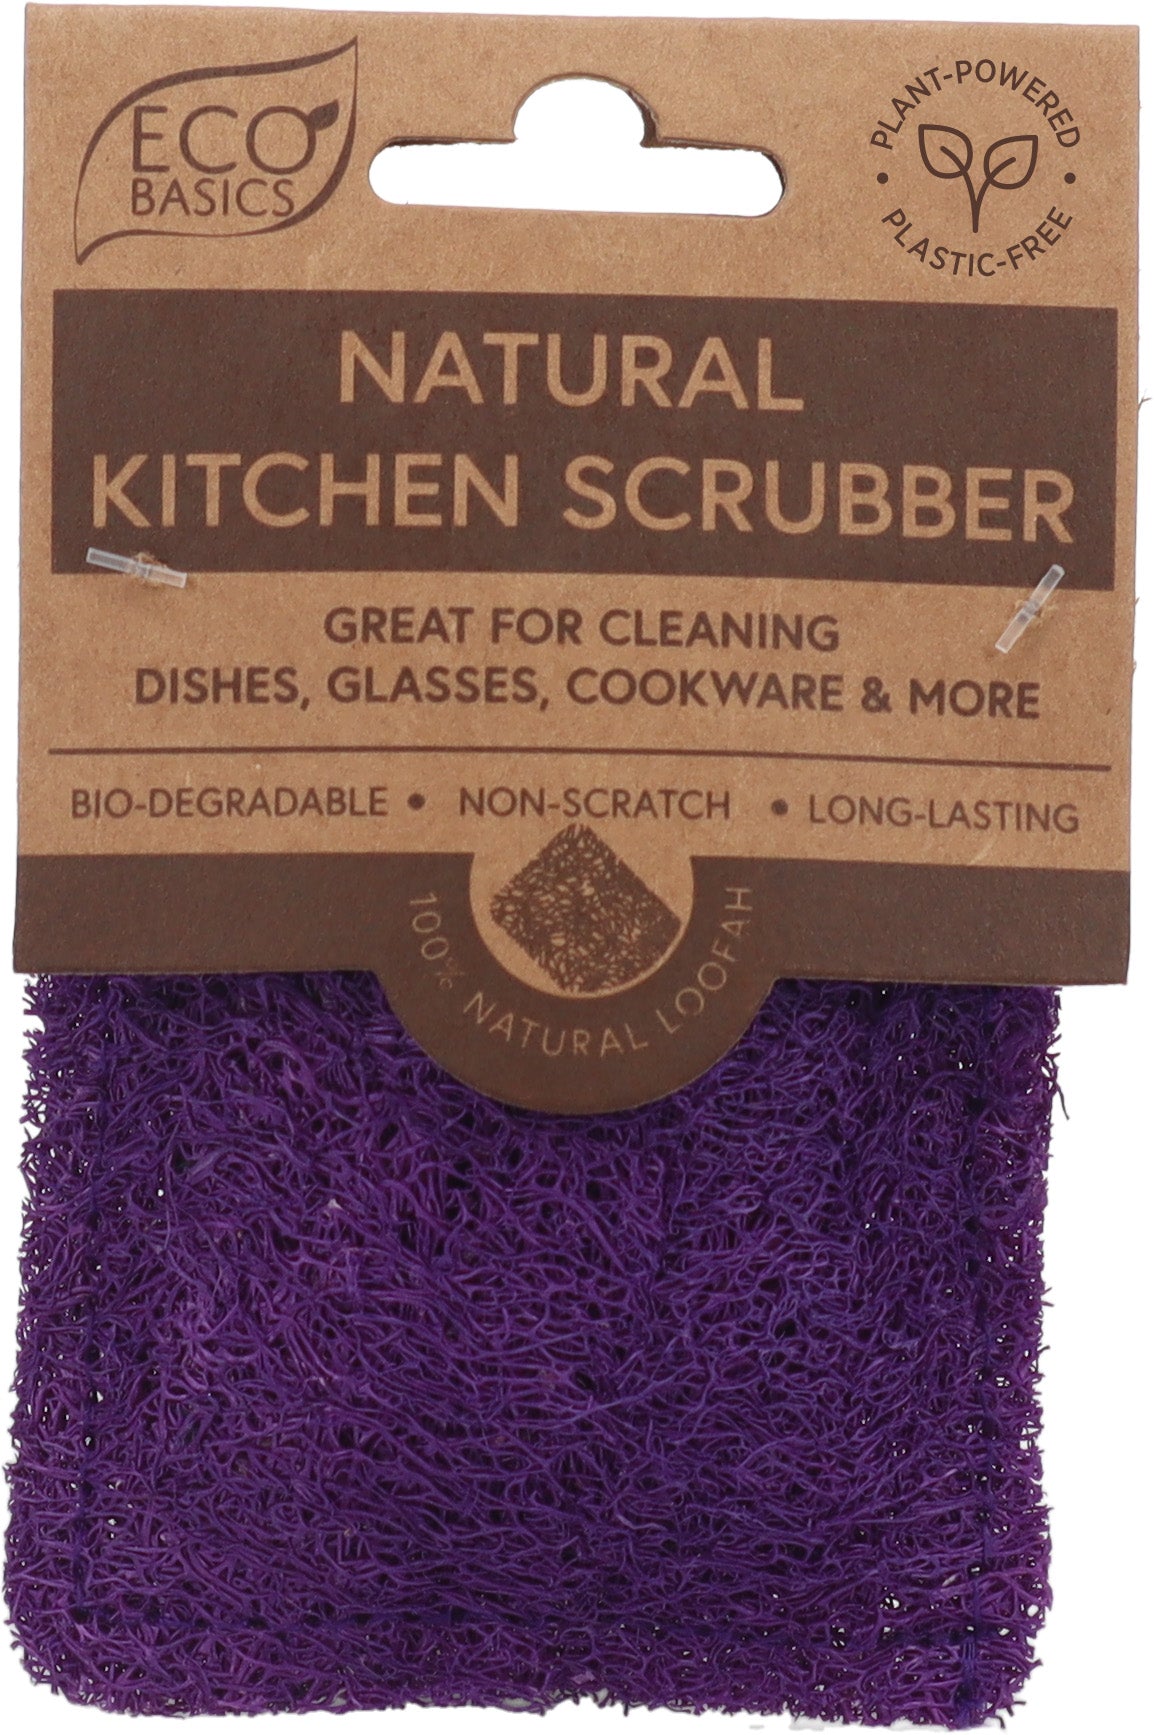 Eco Basics Natural Kitchen Scrubber